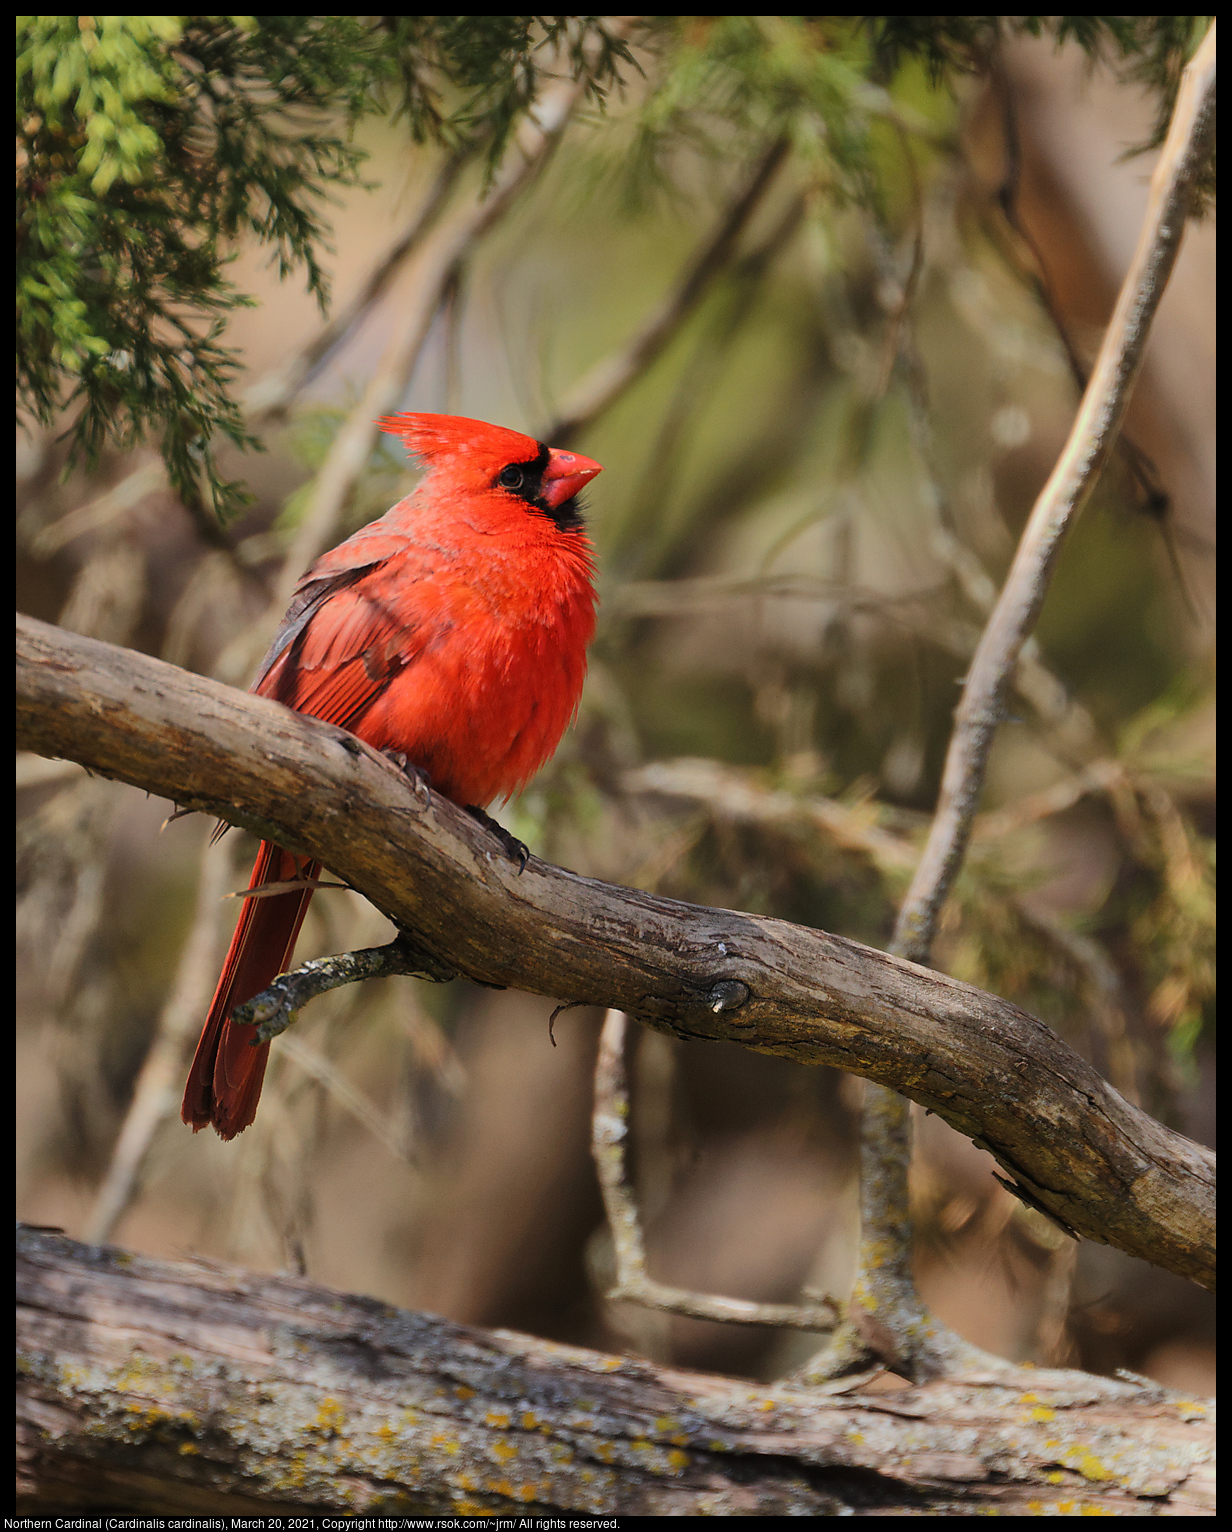 Northern Cardinal (Cardinalis cardinalis), March 20, 2021